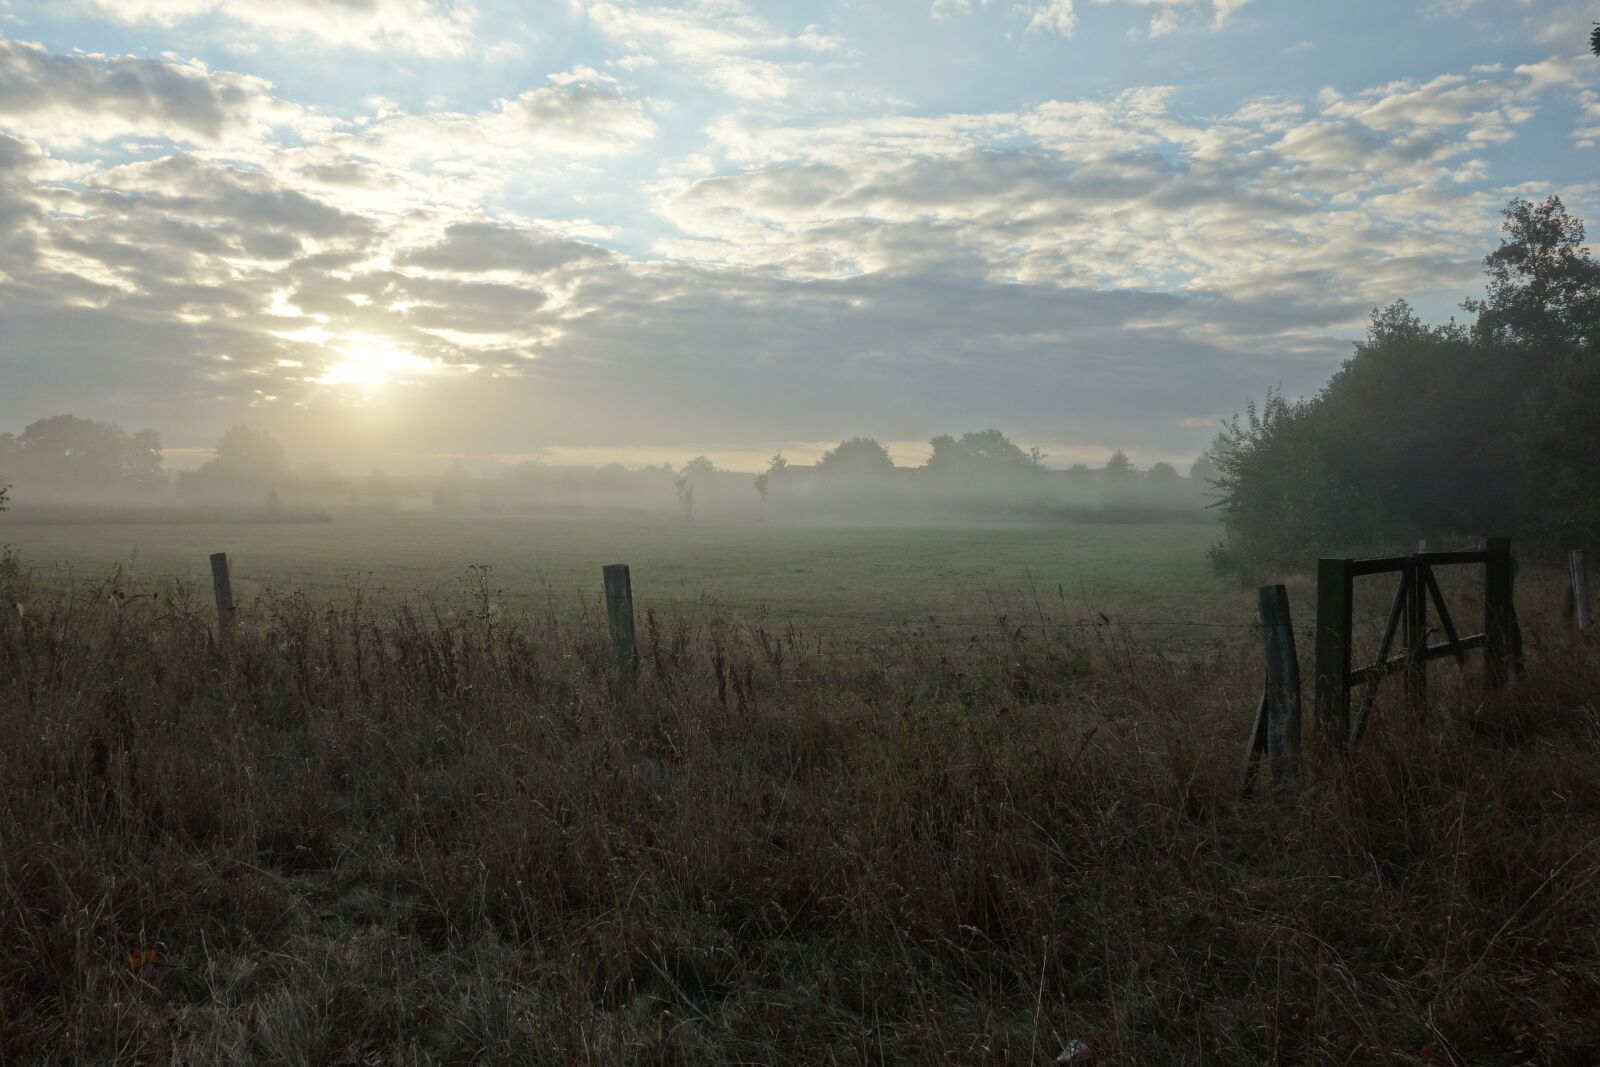 Sony Cyber-shot DSC-RX100 sample photo. Landscape, fog, morning photography